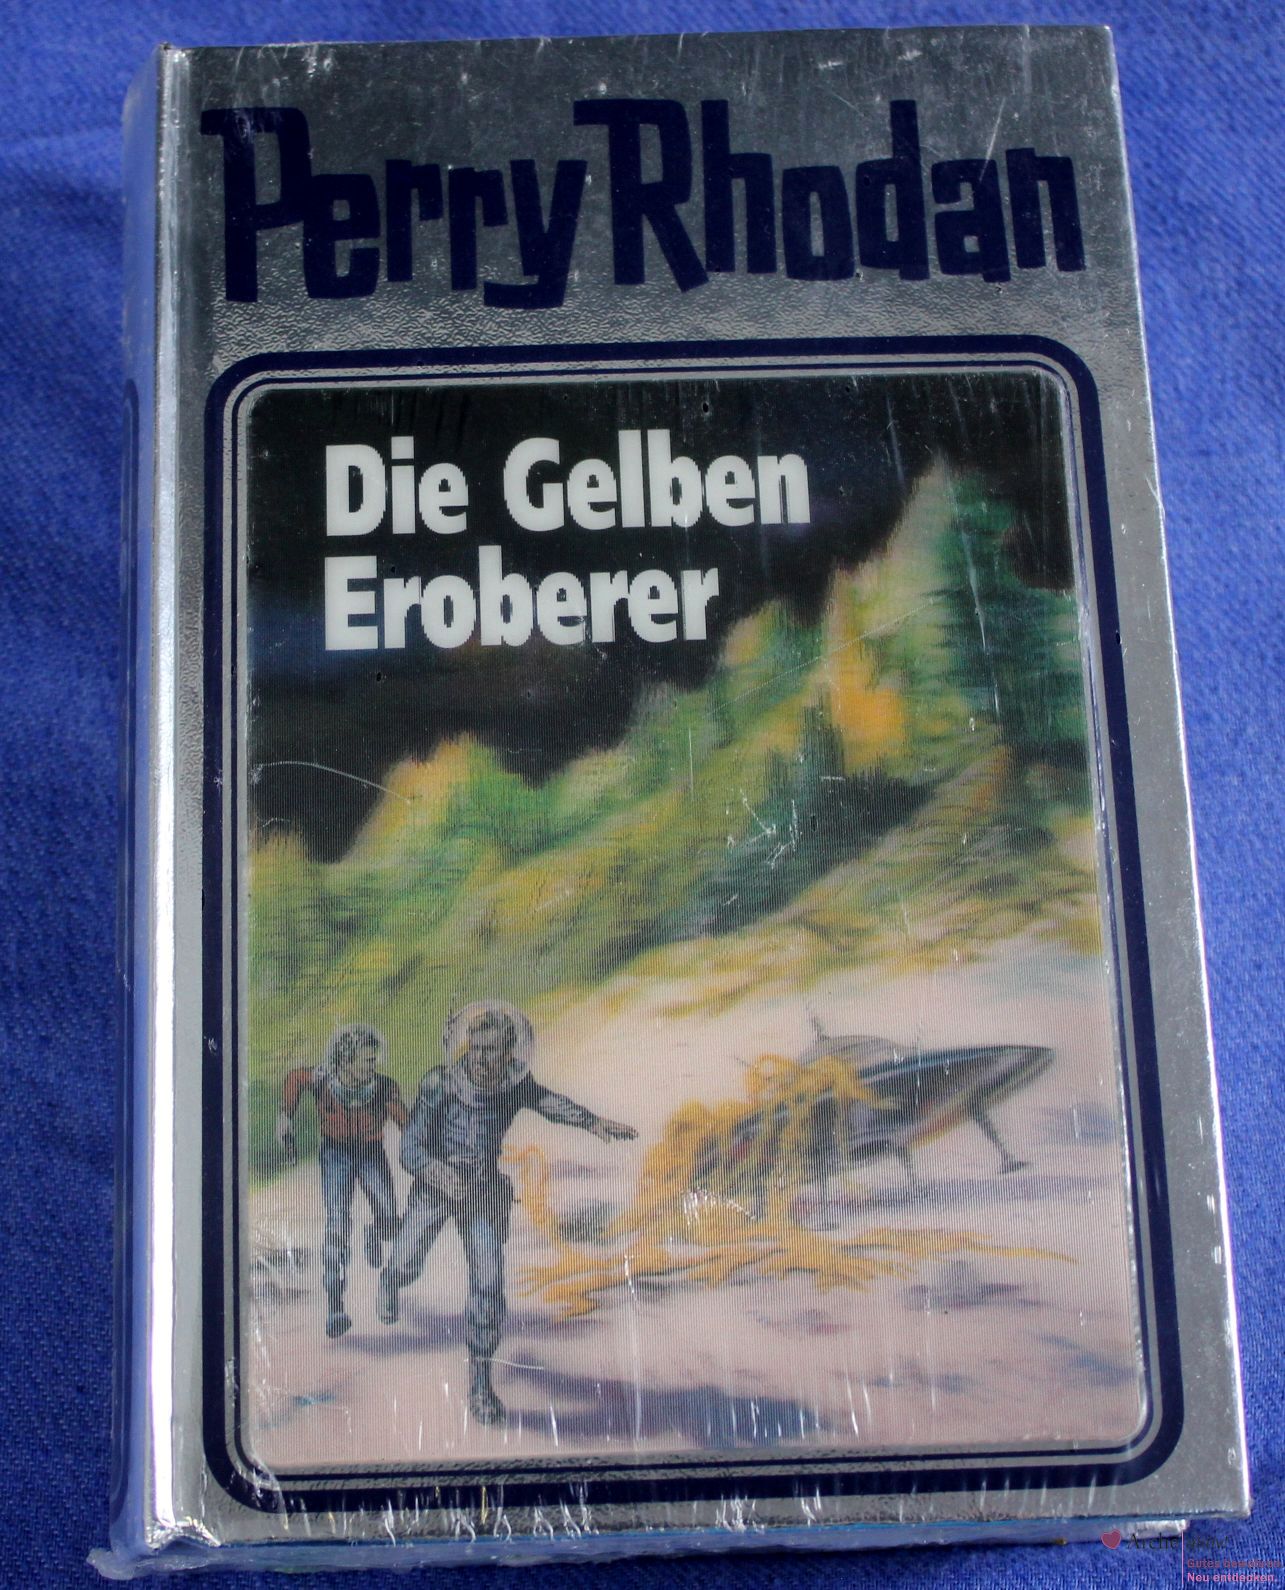 Perry Rhodan Roman "Die Gelben Eroberer", Silberband Nr. 58 m. Hologramm - neu, OVP 